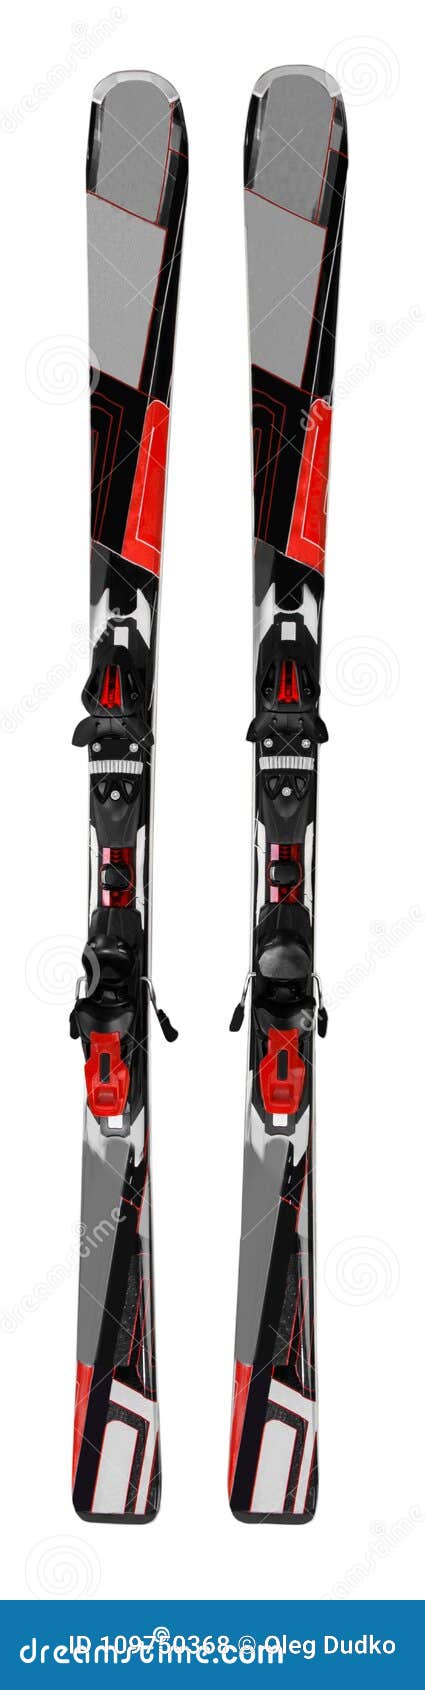 pair of black skis - 